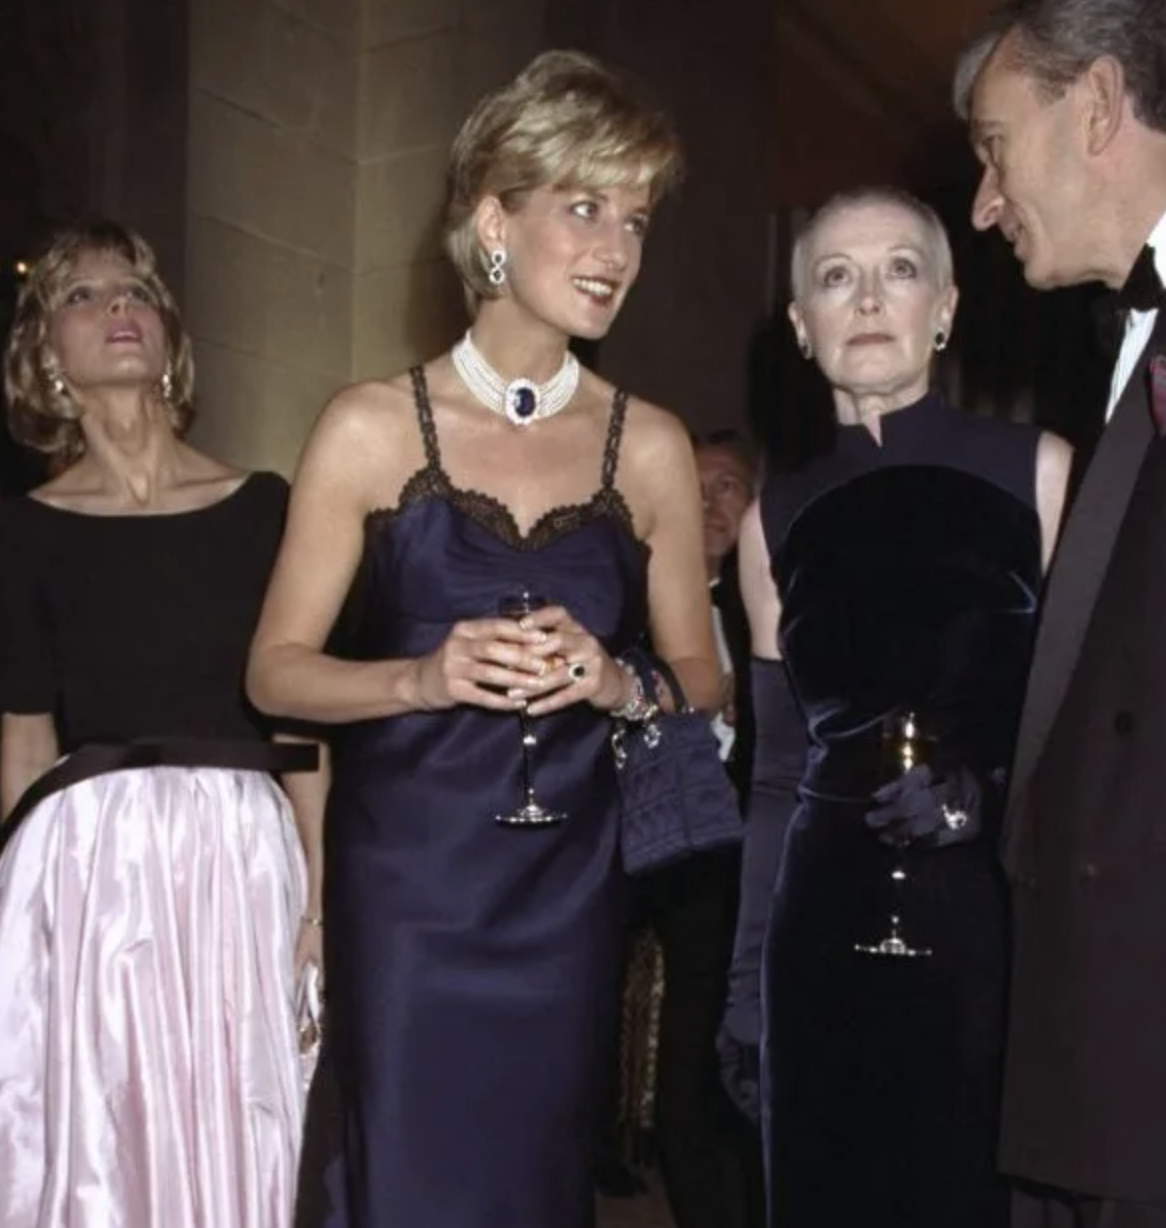 Princesa Diana en vestido de gala azul, conversando con invitados en un evento formal